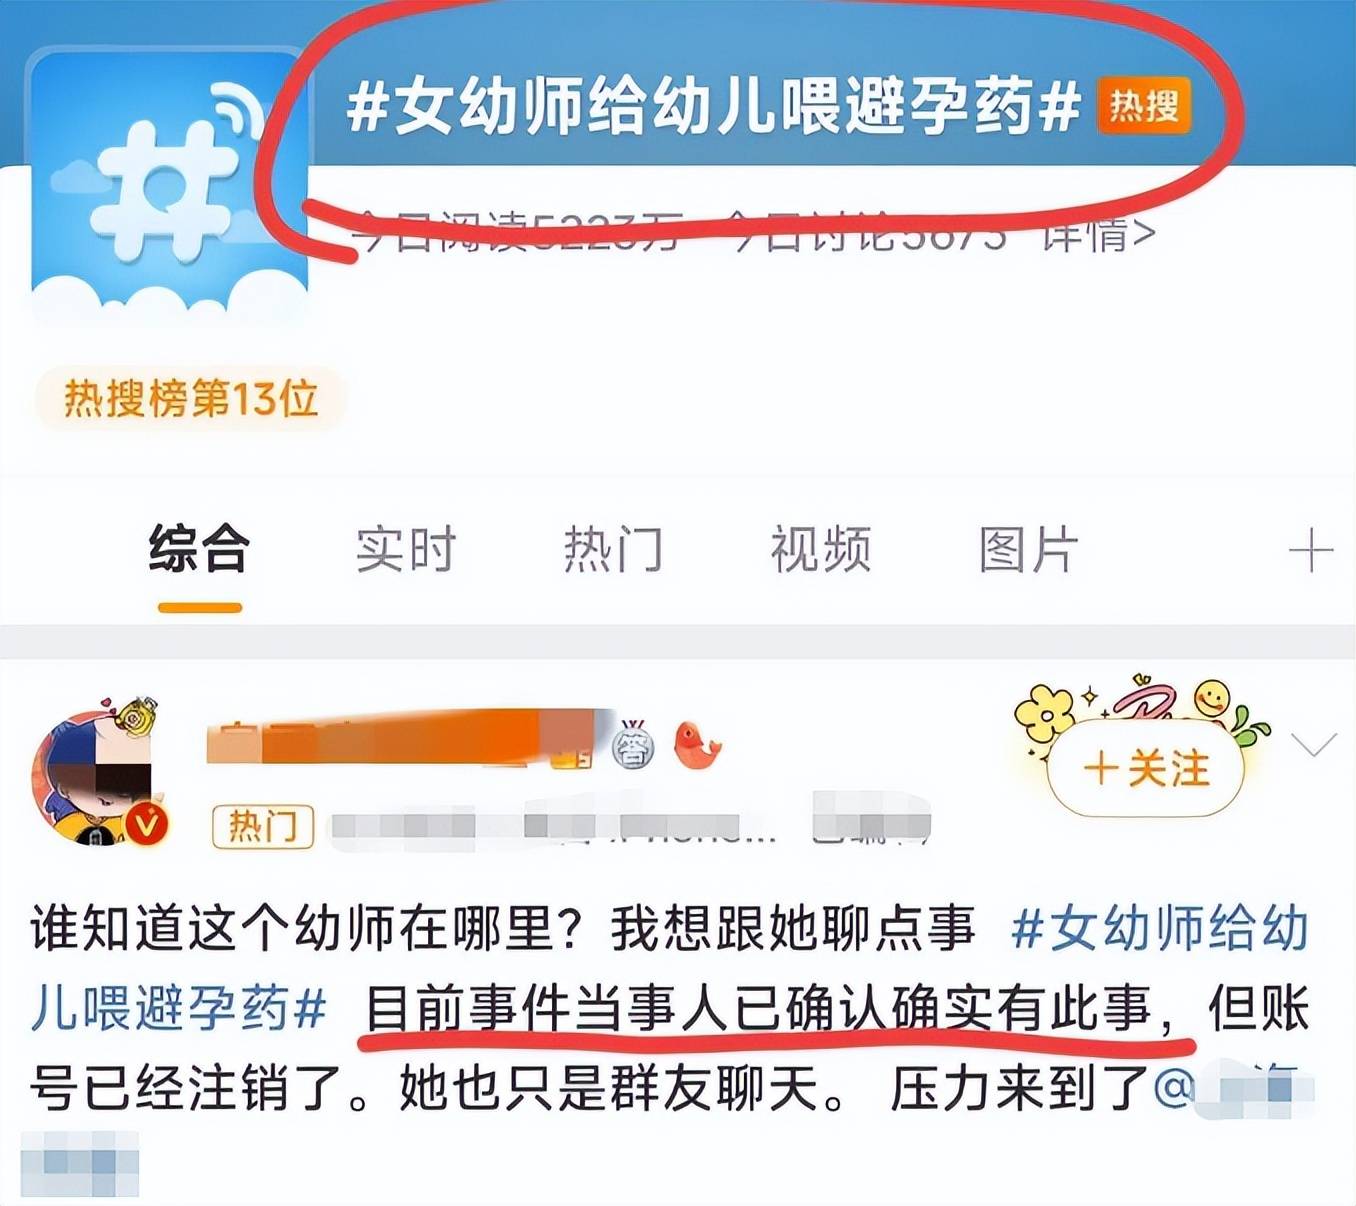 上海女幼师自称给男童喂避孕药后续,切莫让一时口嗨成为自身污点